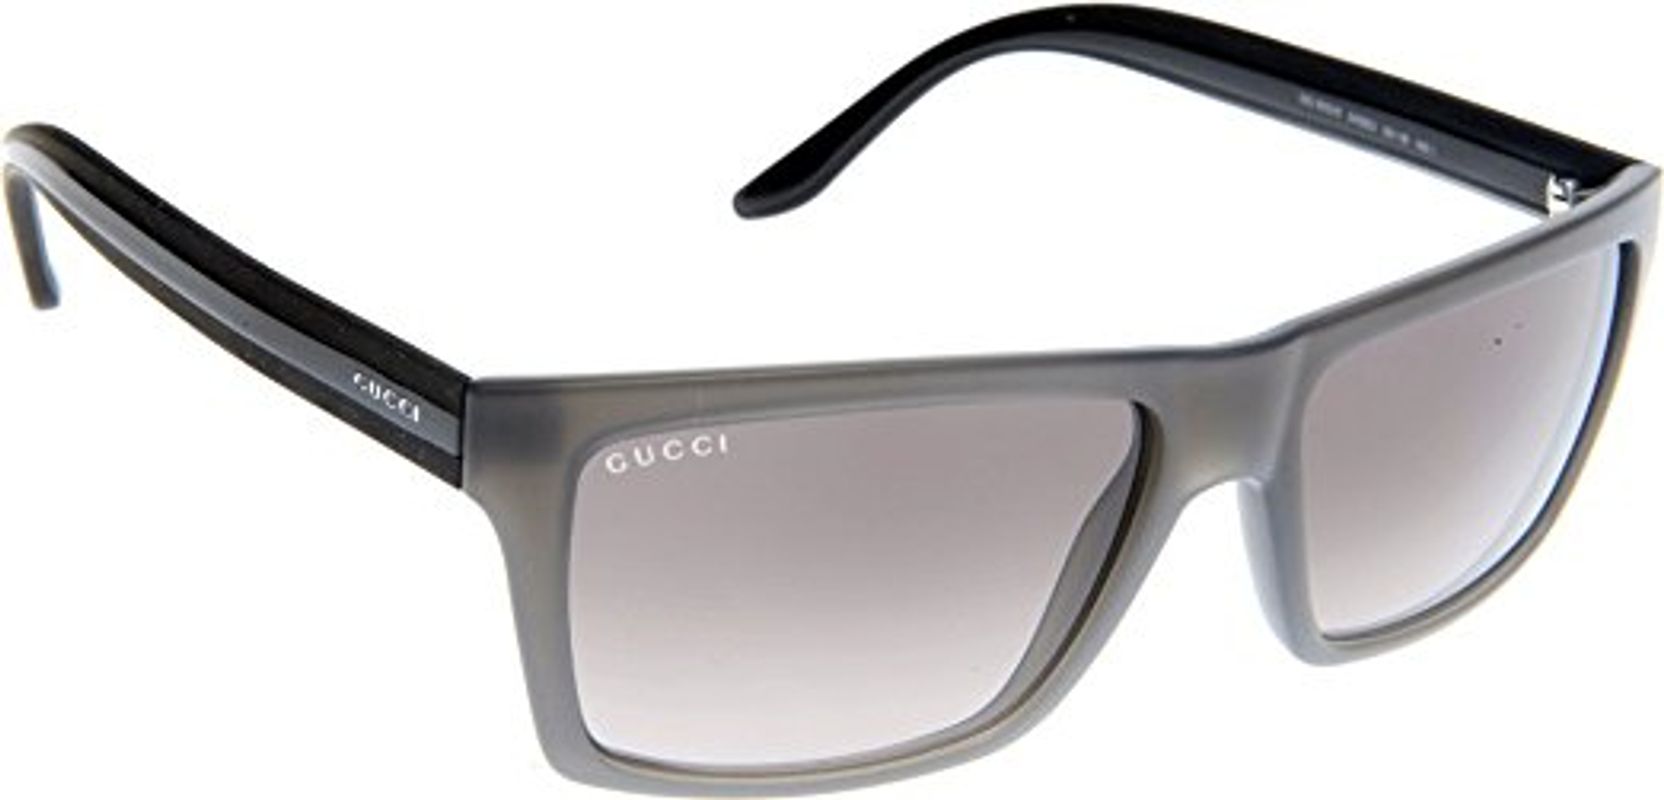 Mắt Kính Gucci GG0010S-004 Grey Lens Chính Hãng